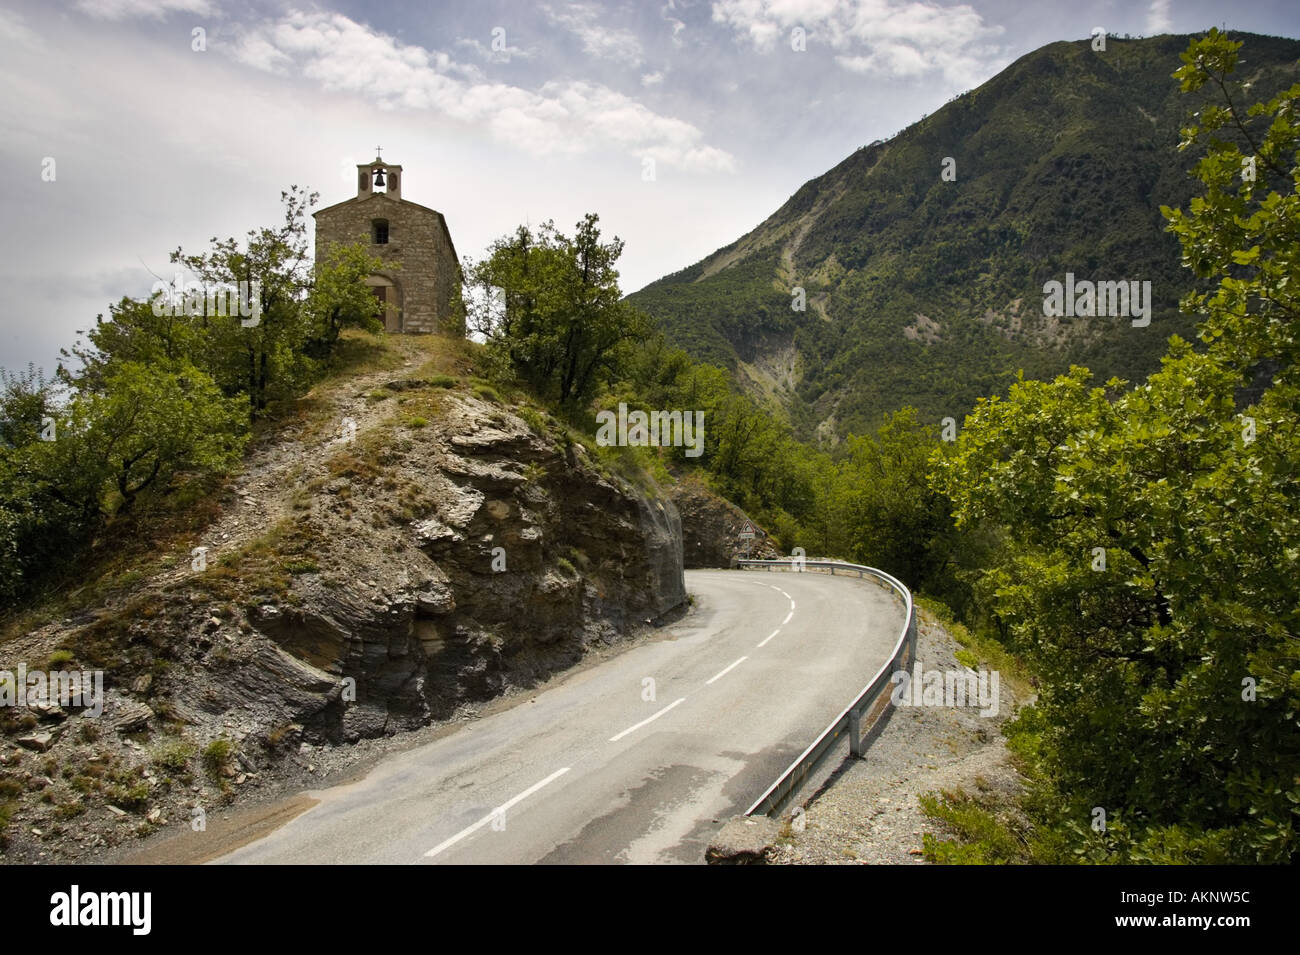 Petite chapelle sur une colline près de clans dans les montagnes des Alpes Maritimes, sud de la France Banque D'Images